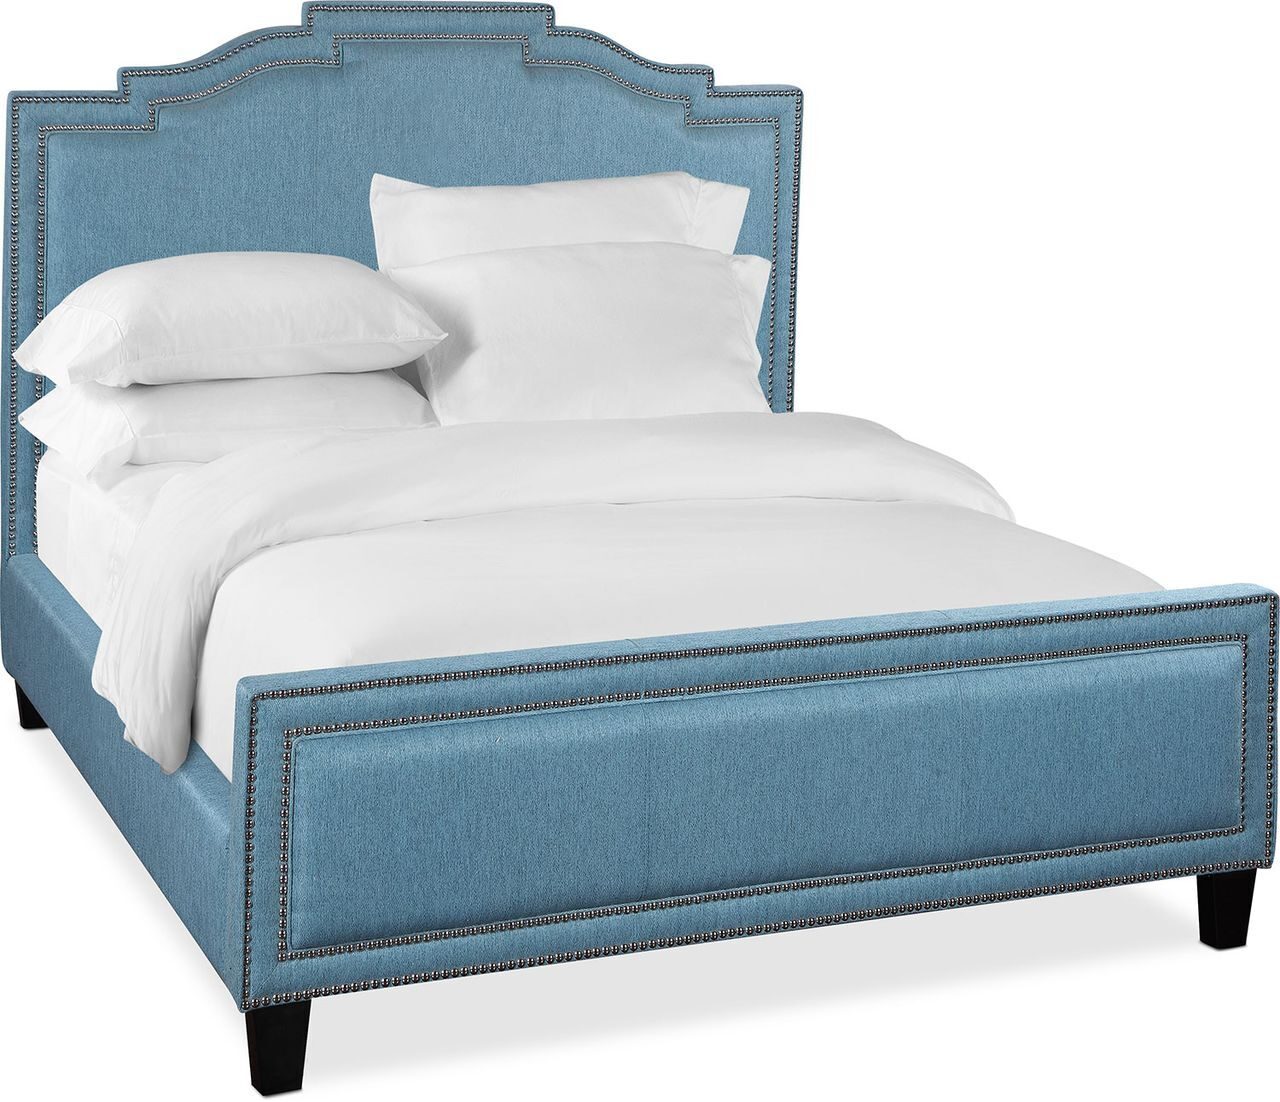 Queen Bed кровать с изголовьем